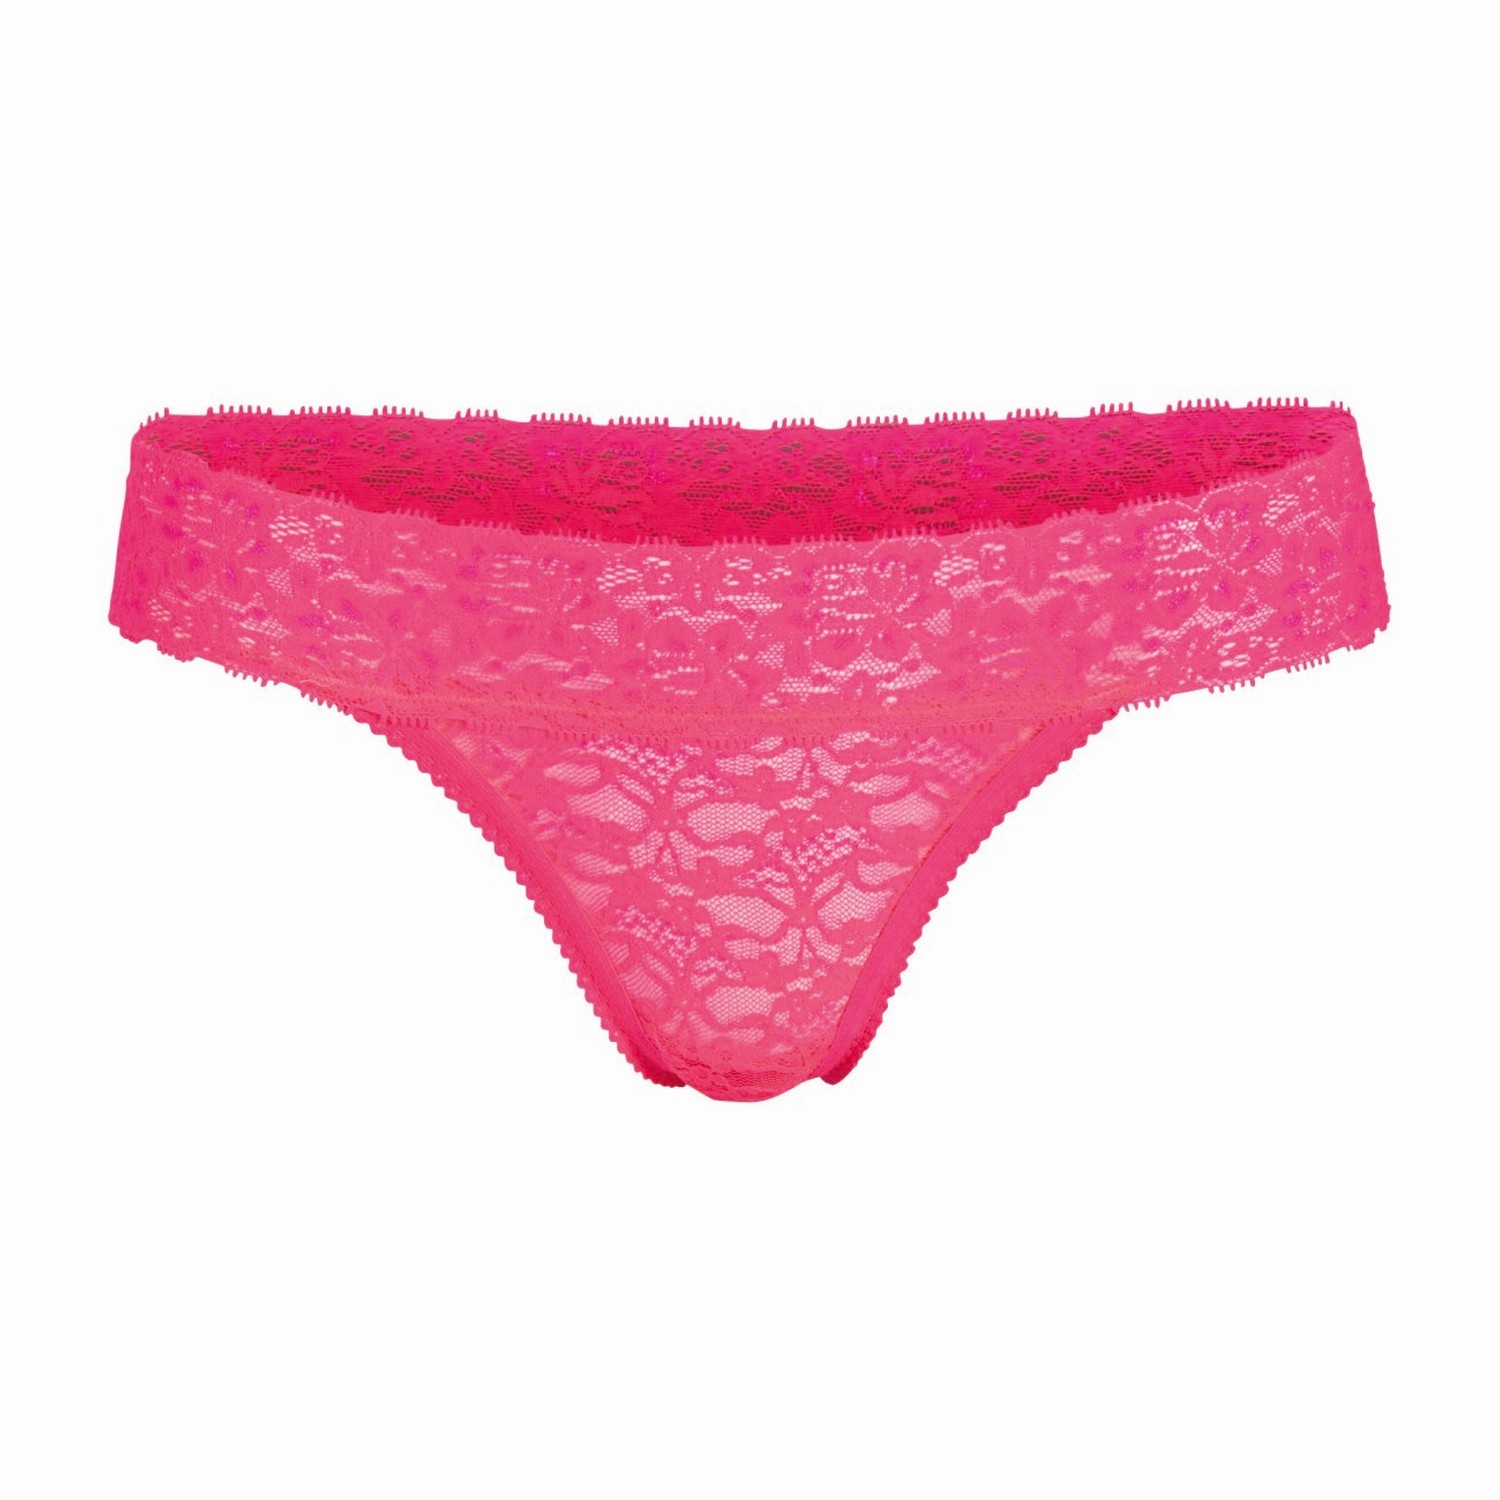 Björn Borg Love All Lace String Prism Pink - Briefs - Underwear ...